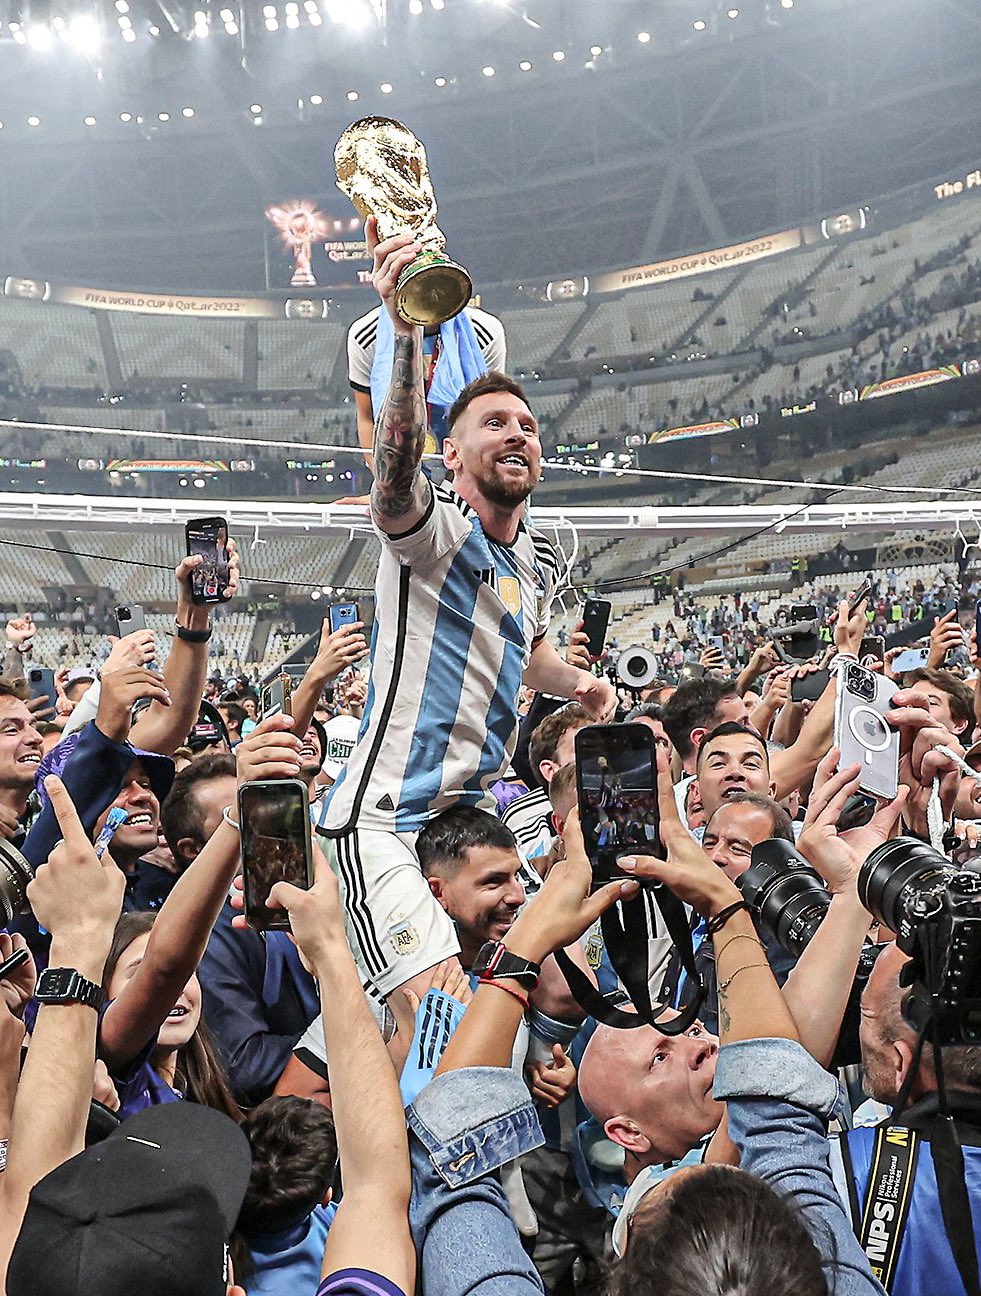 Quả cúp đã đến với Messi! Hãy xem hình để cảm nhận niềm vui và sự hào hứng của anh ấy khi đang cầm trên tay chiếc cúp danh giá.